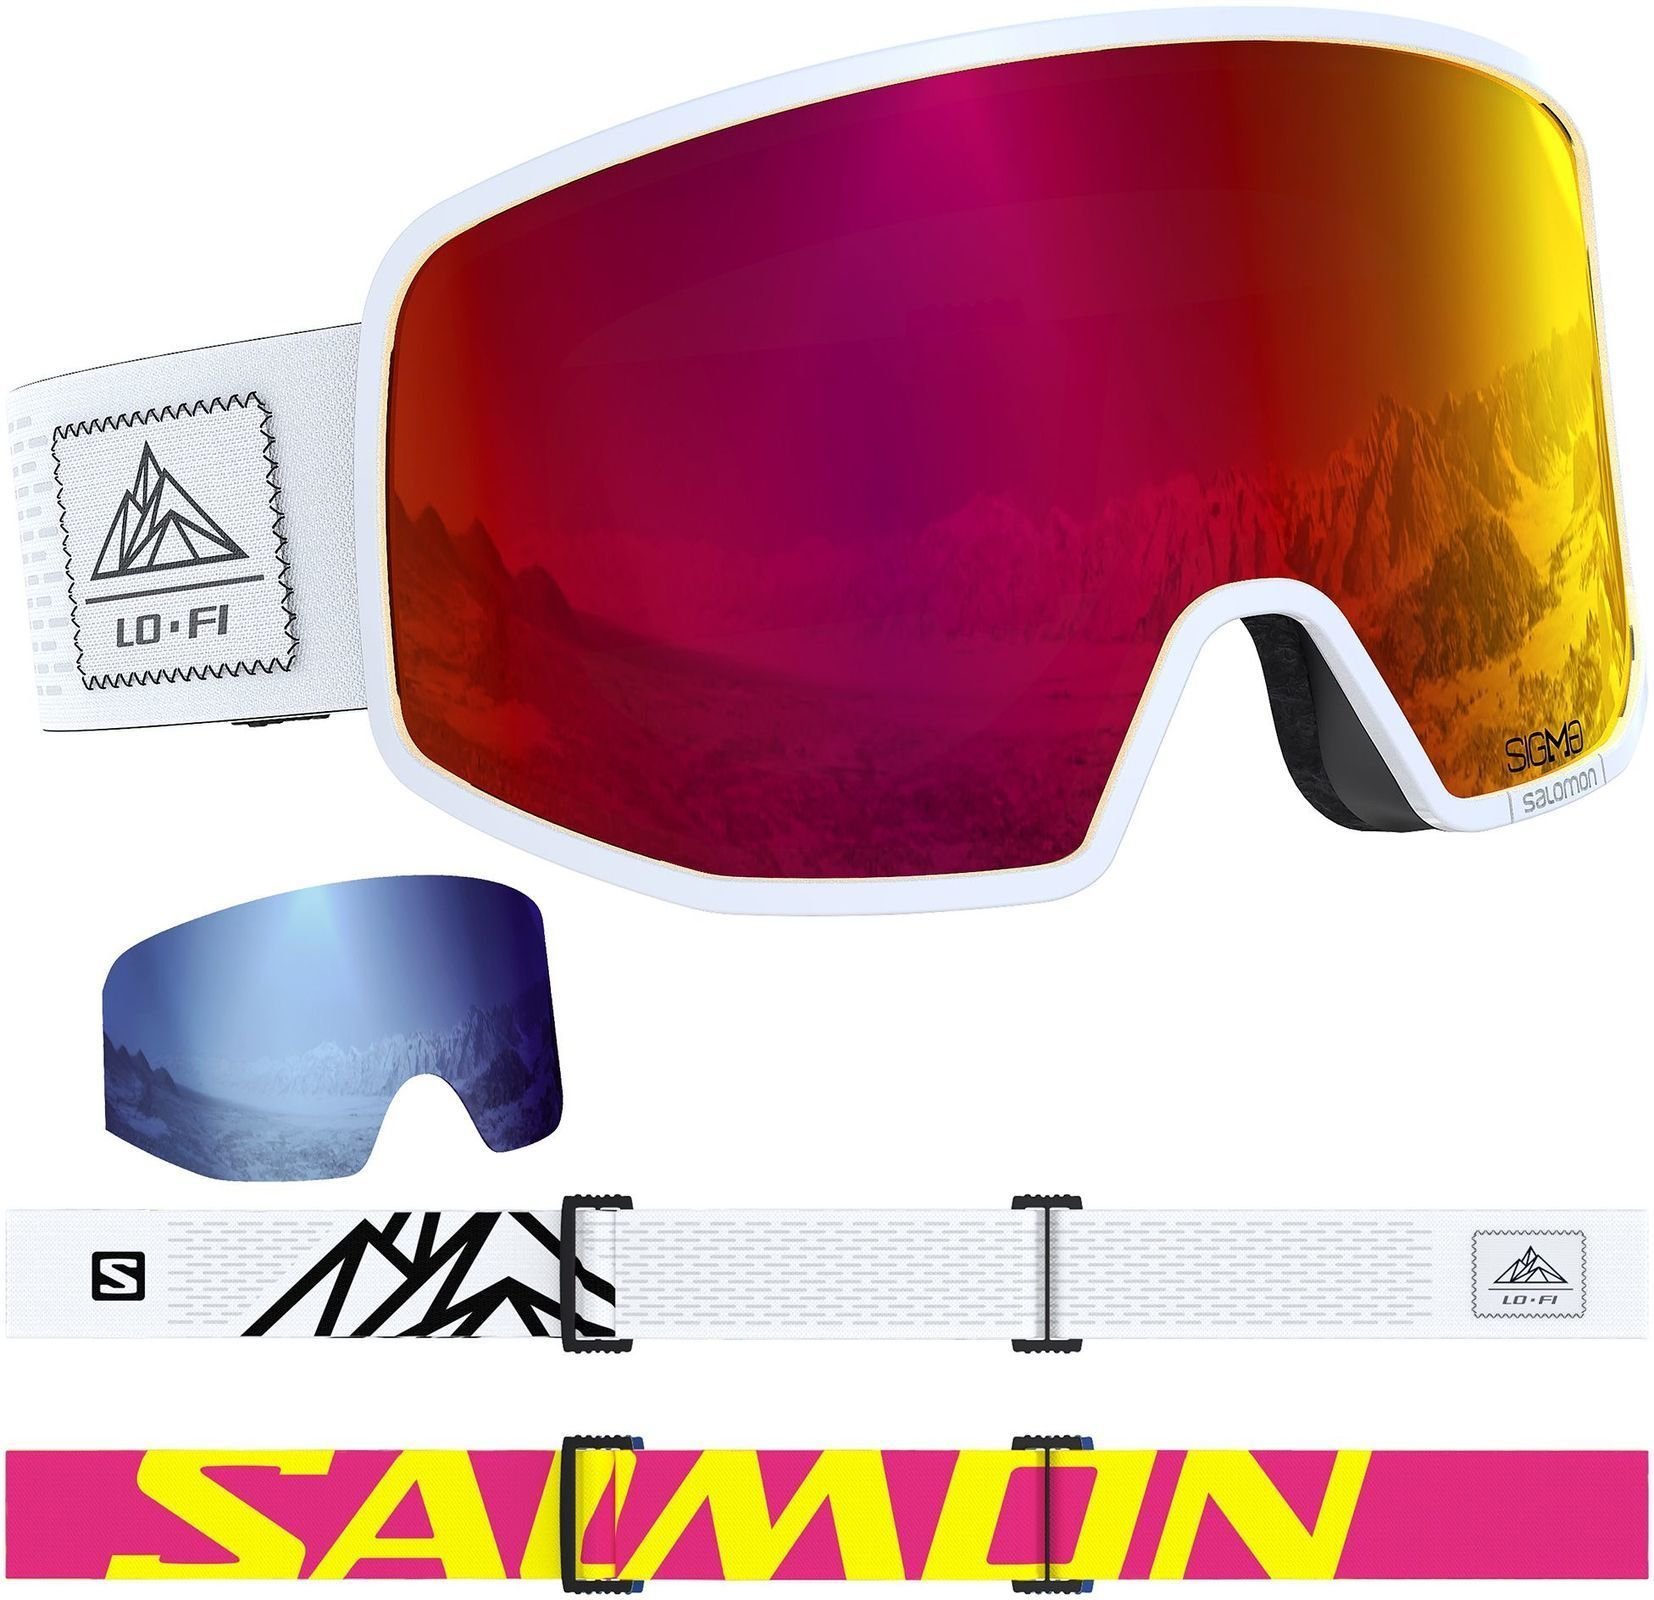 Ochelari pentru schi Salomon LO FI Black/White Ochelari pentru schi